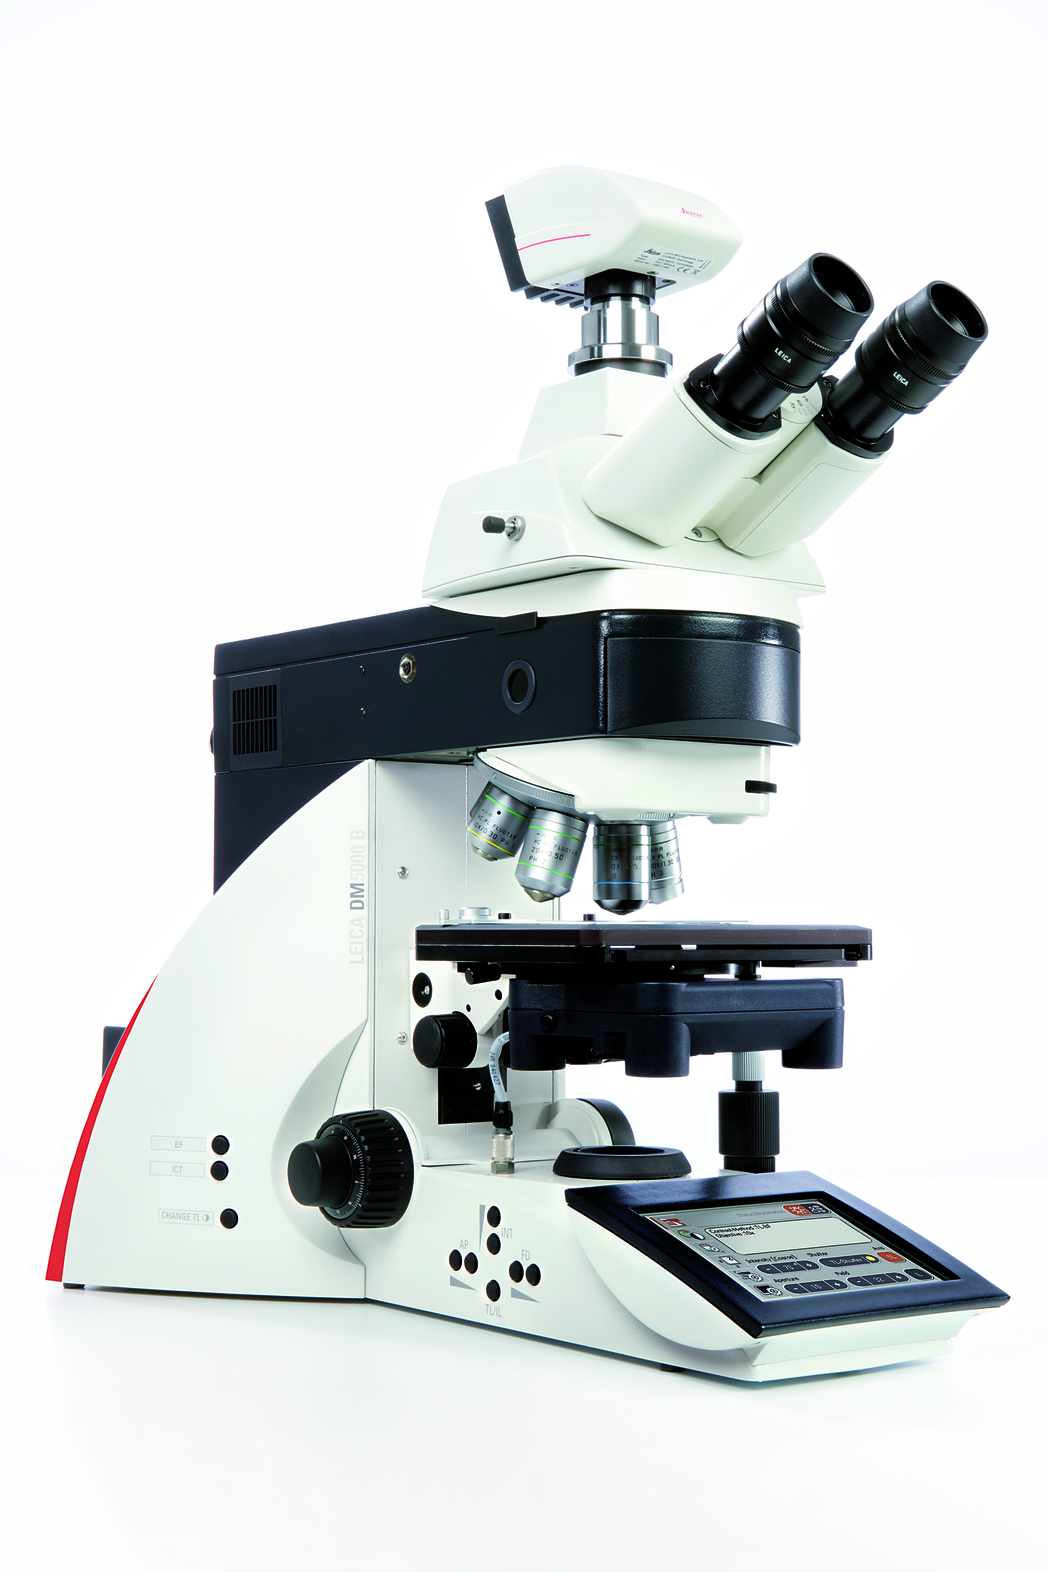 Le Leica DM5000 B automatisé, intuitif et idéal pour les études morphologiques et la recherche sur les cellules vivantes est facile à utiliser.